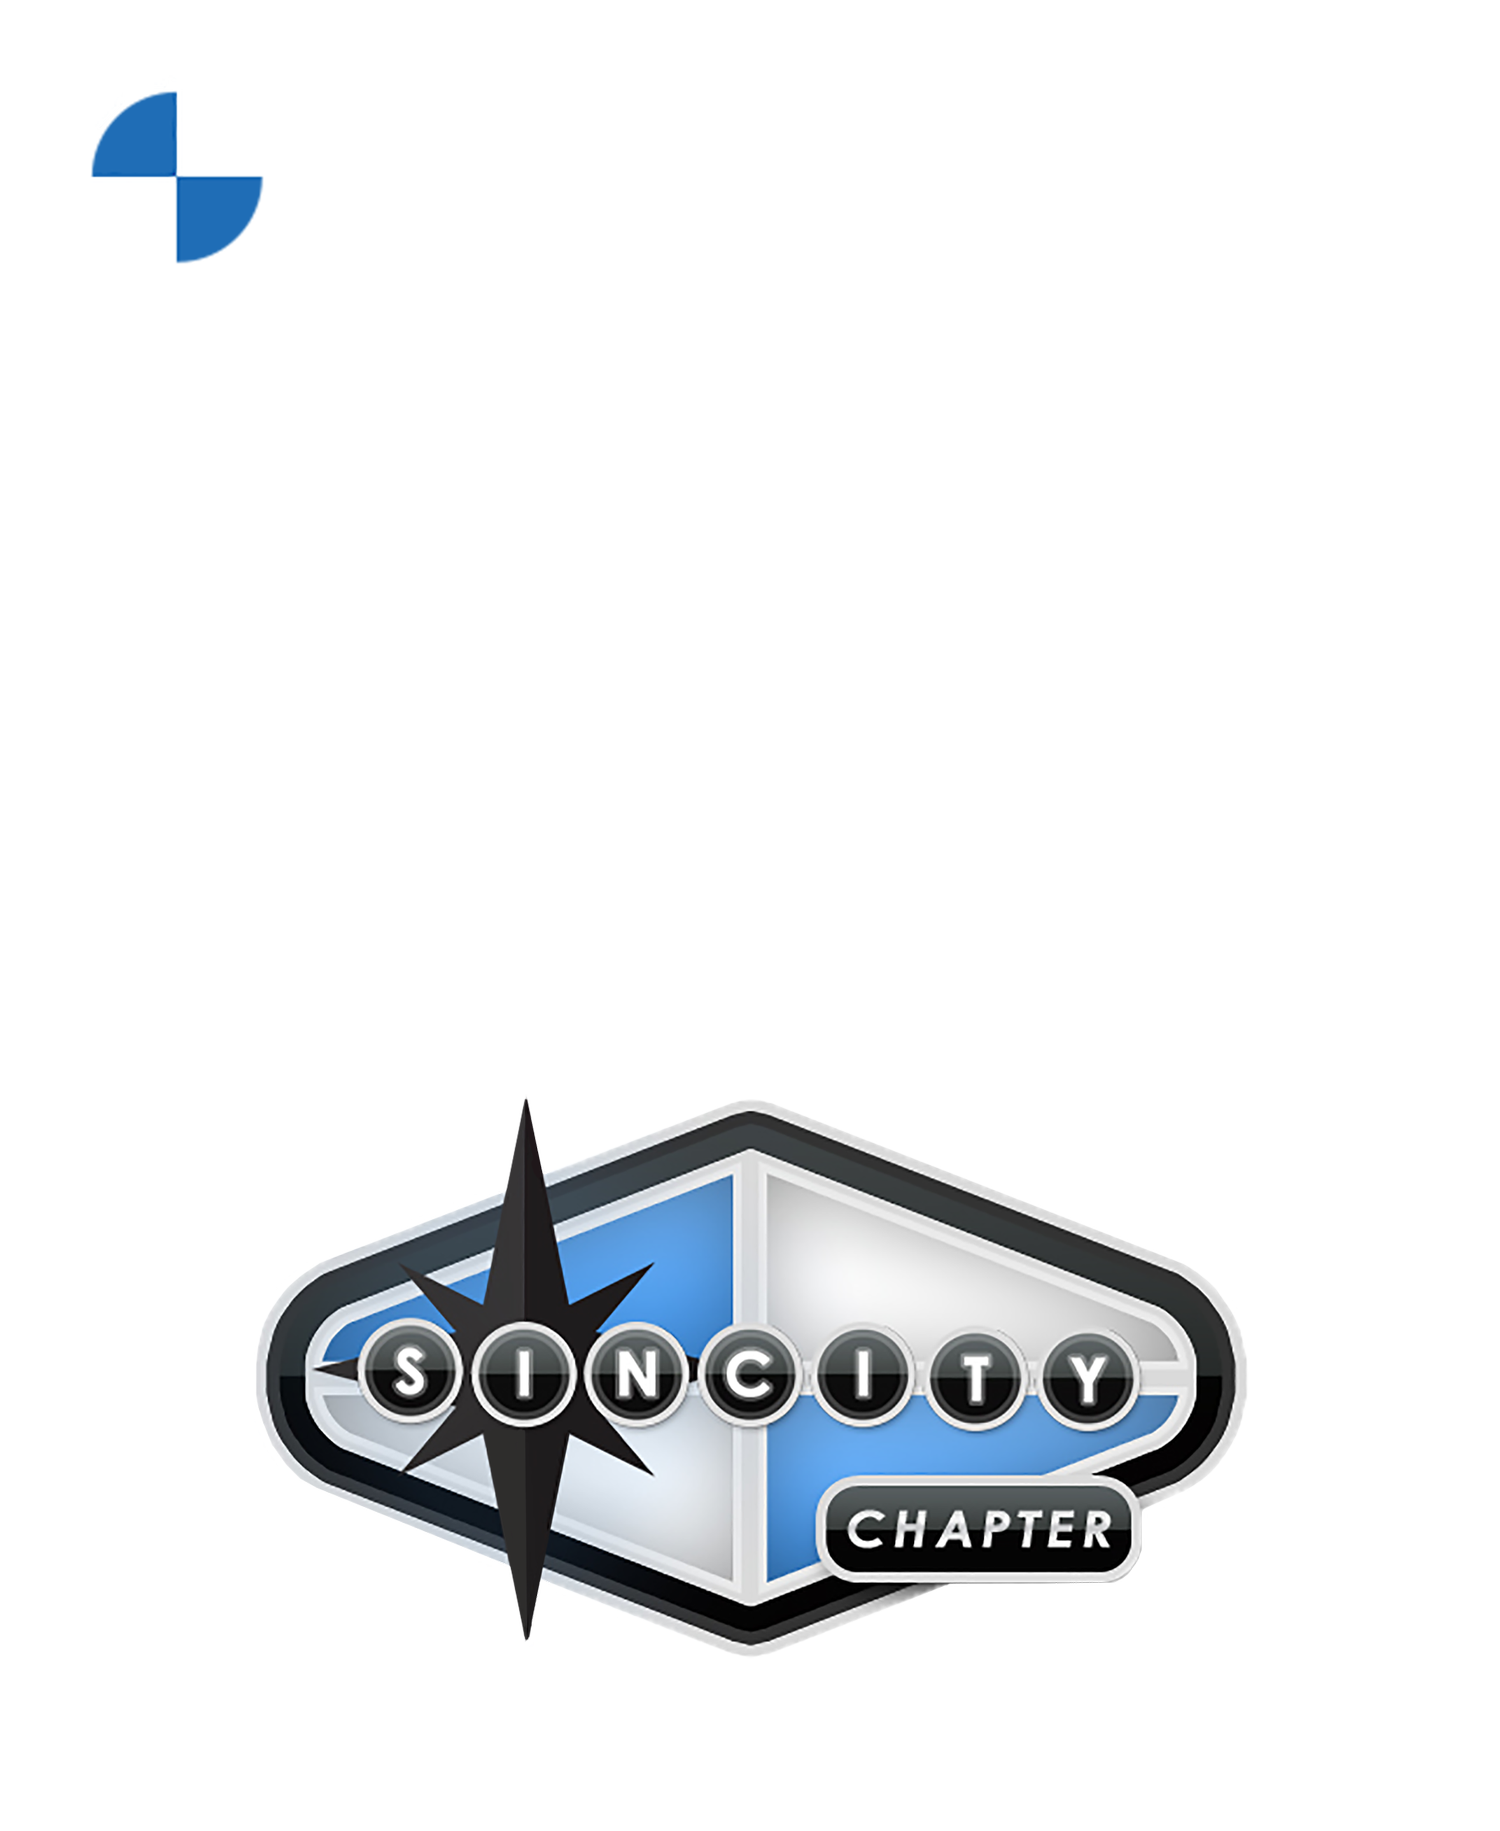 Sin City BMW Club